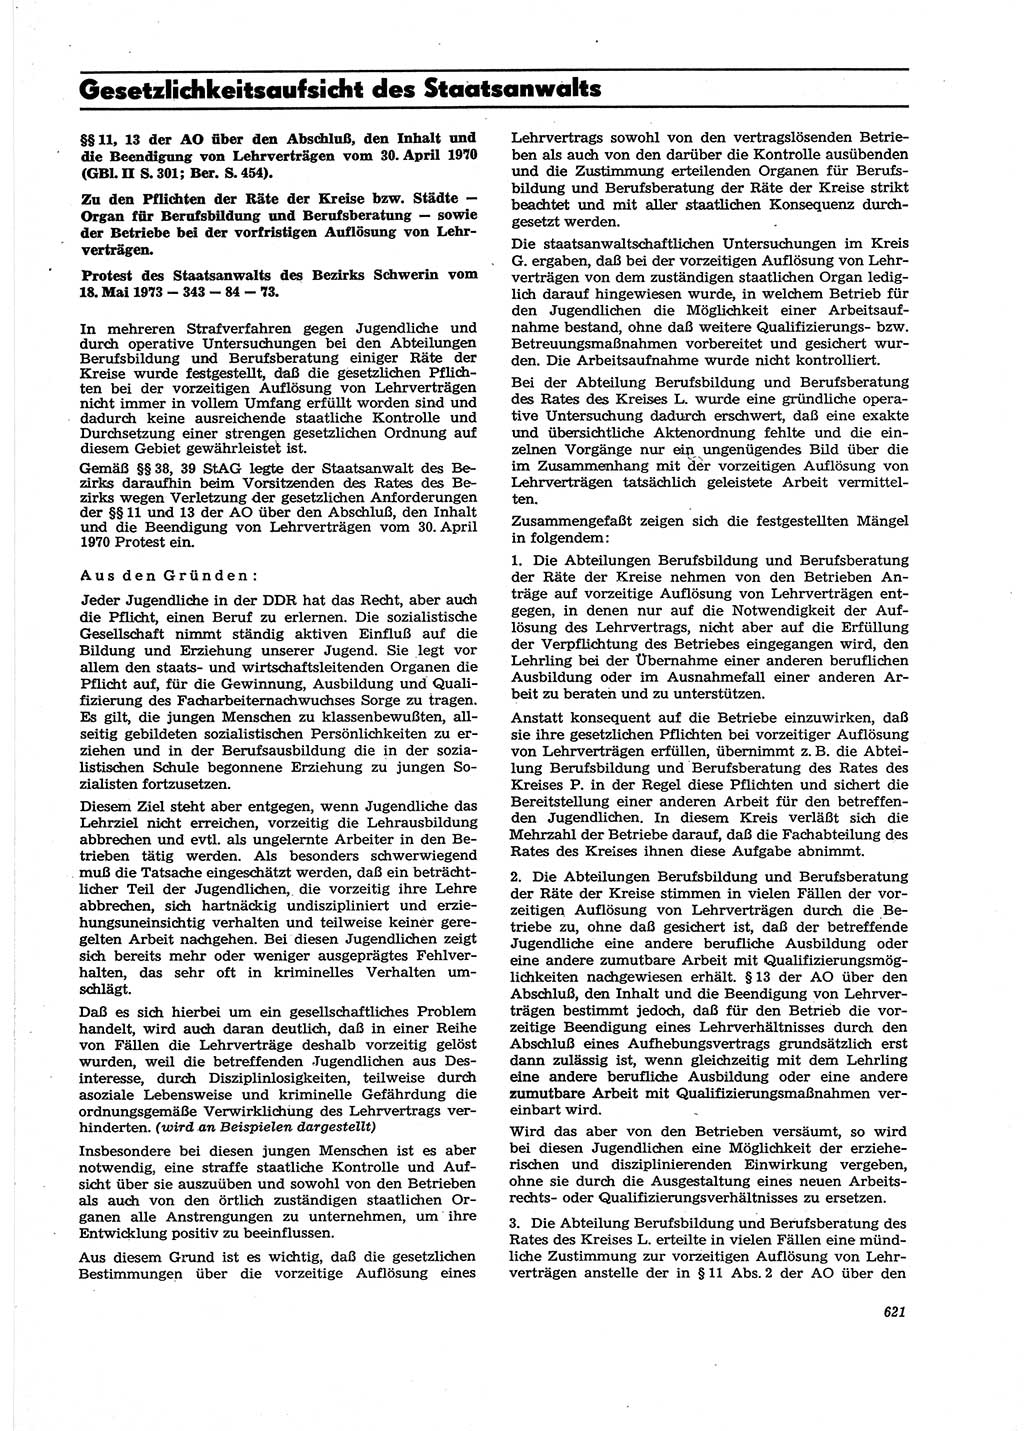 Neue Justiz (NJ), Zeitschrift für Recht und Rechtswissenschaft [Deutsche Demokratische Republik (DDR)], 27. Jahrgang 1973, Seite 621 (NJ DDR 1973, S. 621)